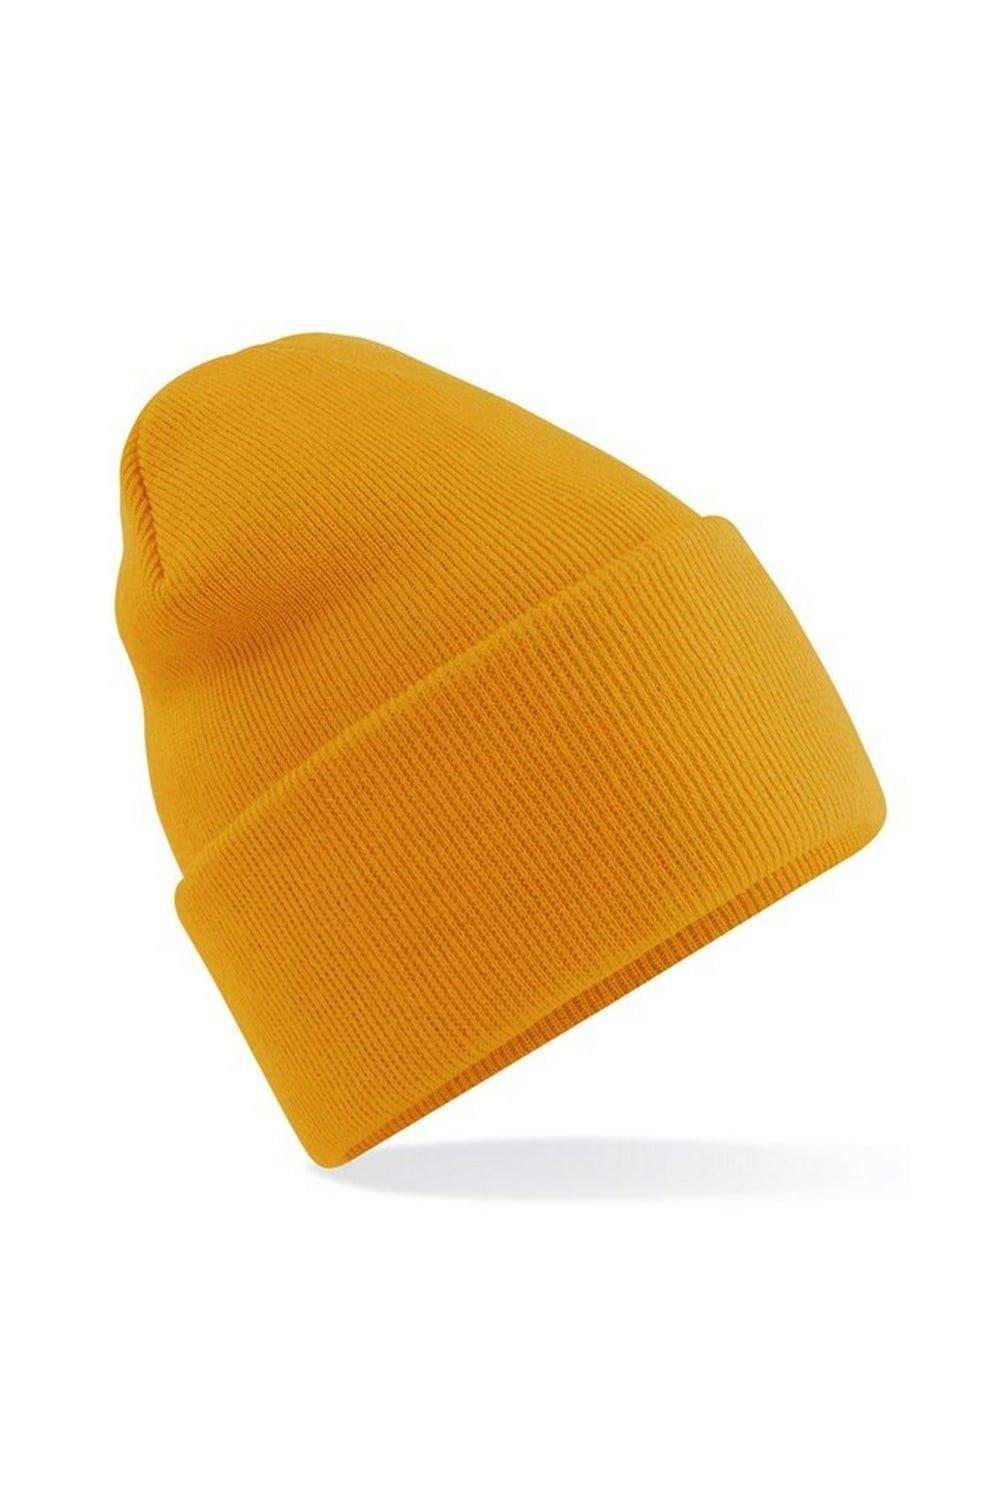 хюгге бини beechfield желтый Оригинальная шапка-бини с отвернутыми манжетами Beechfield, желтый